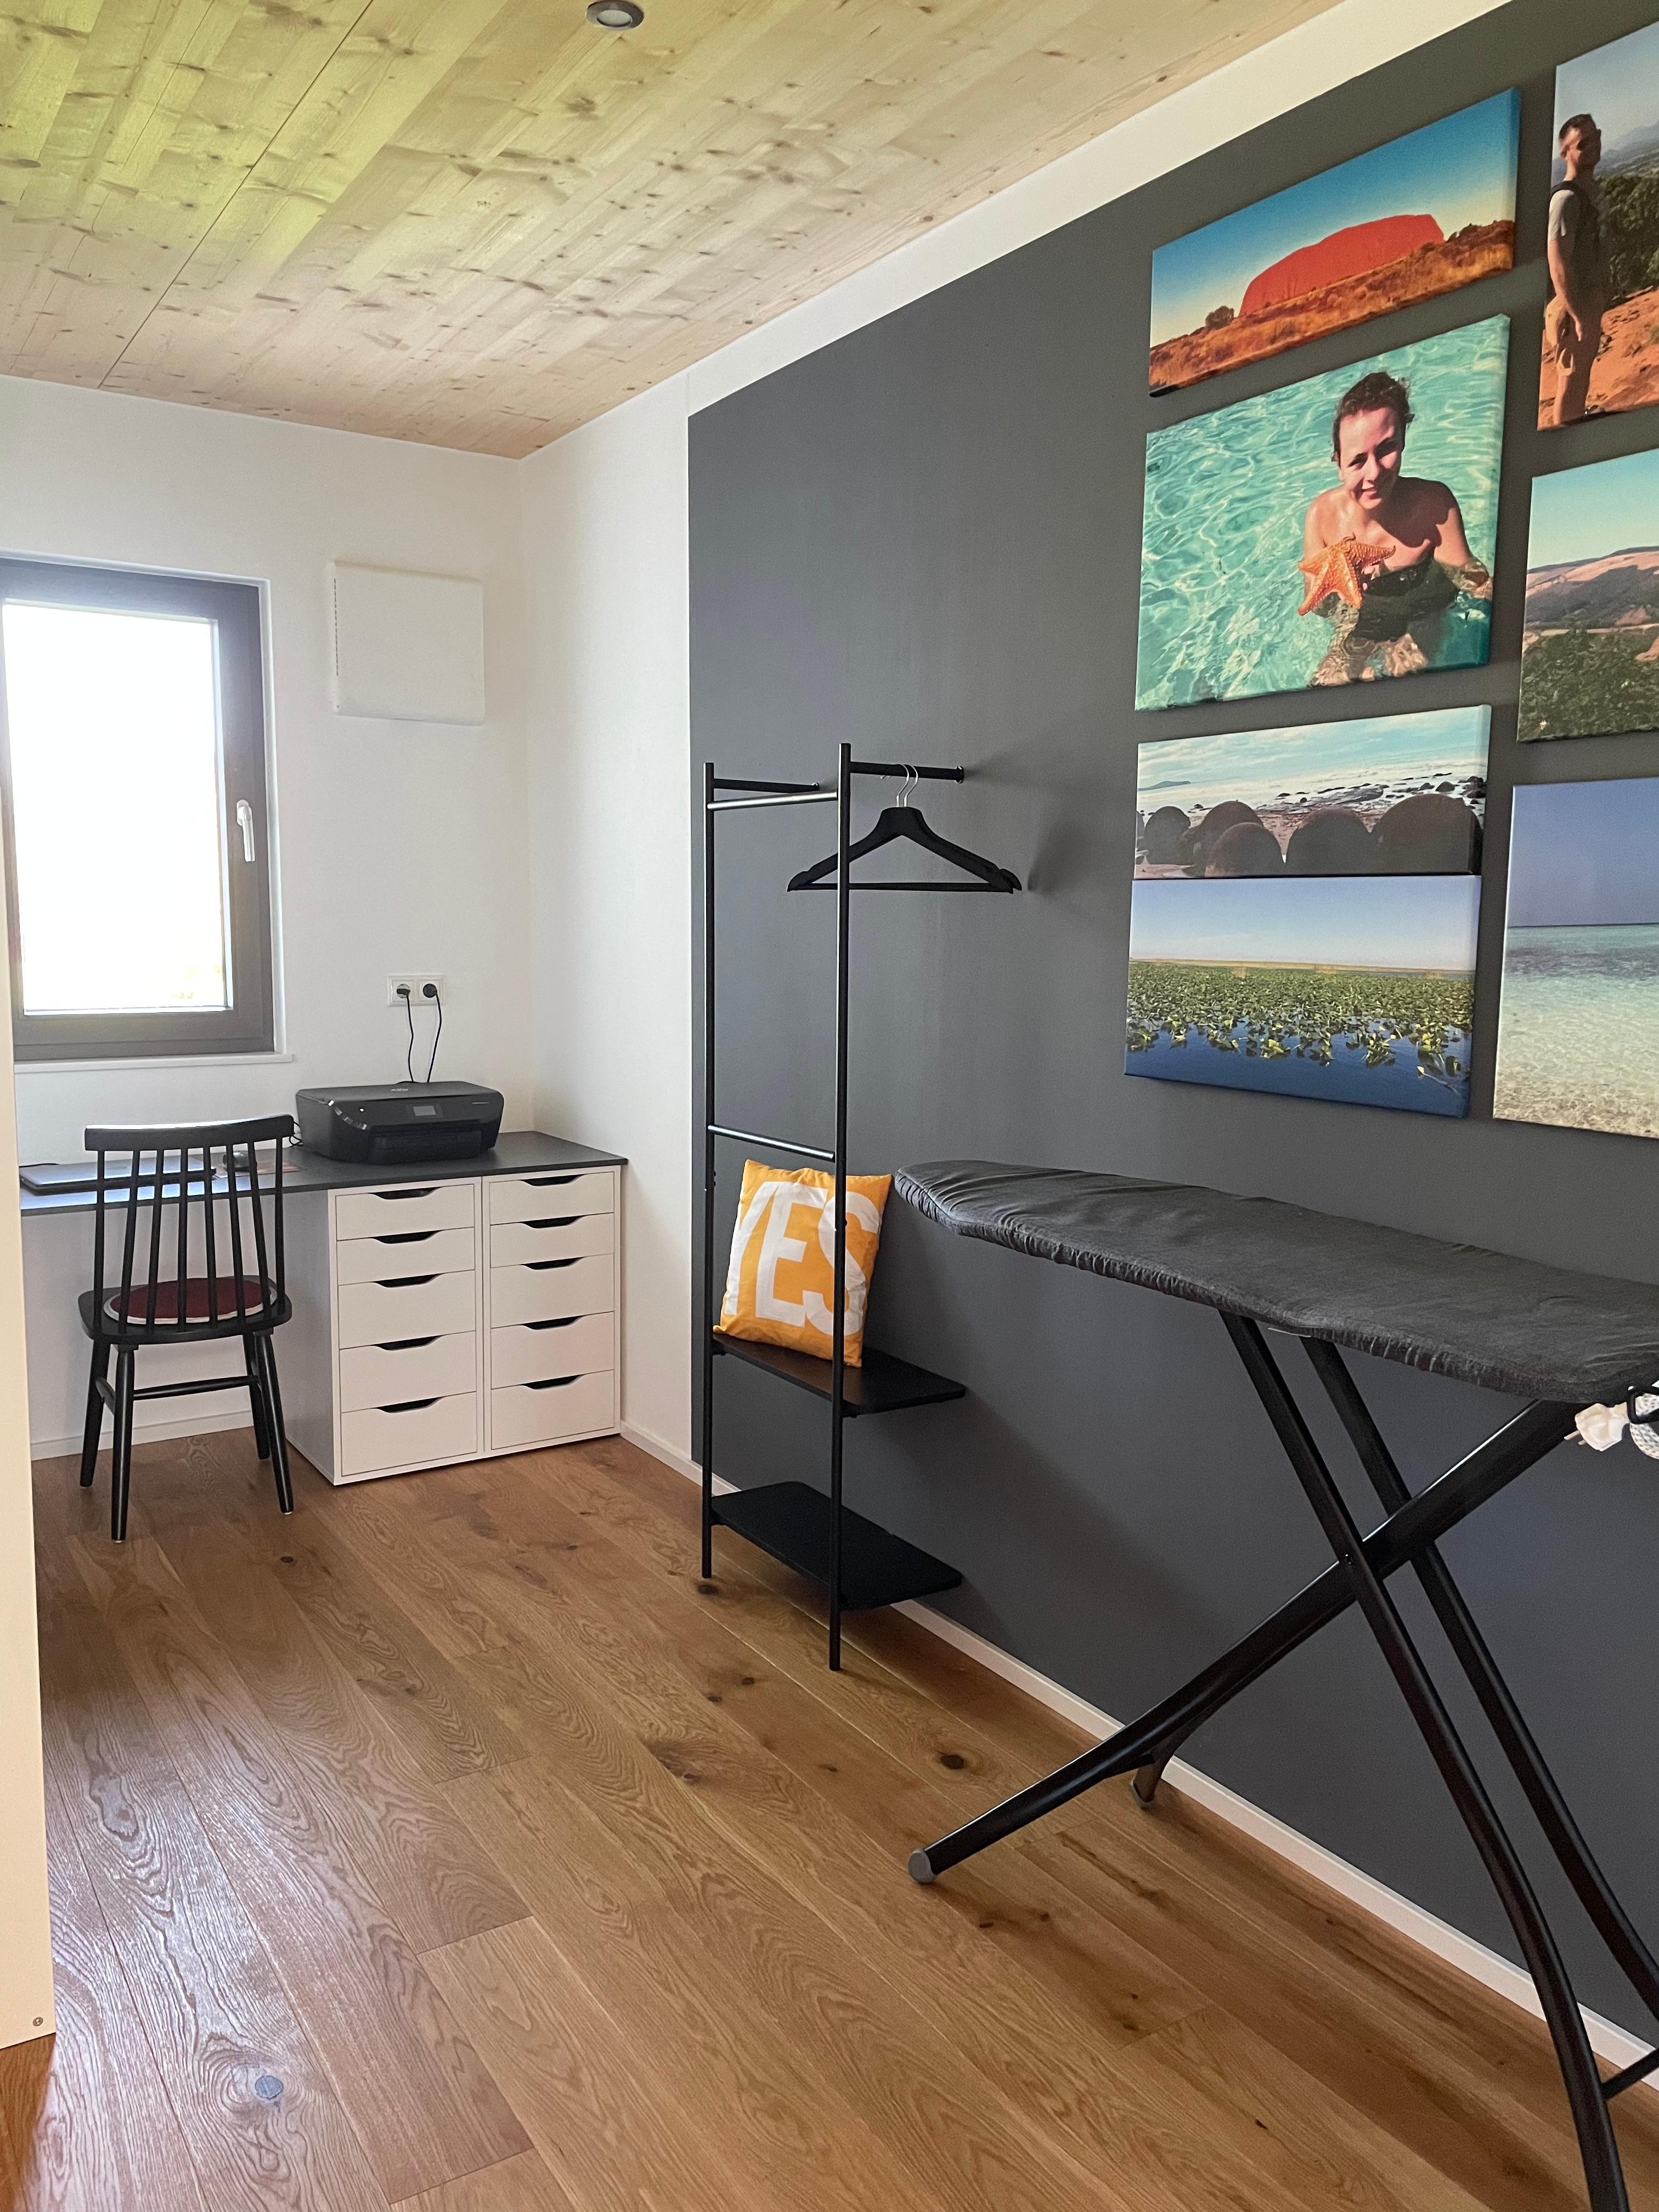 Ich liebe unser neugestaltetes Büro mit Hauswirtschaftsecke in kontrastreichen Farben🖤🤍 #dunkelgrau #inspo #couchstyles